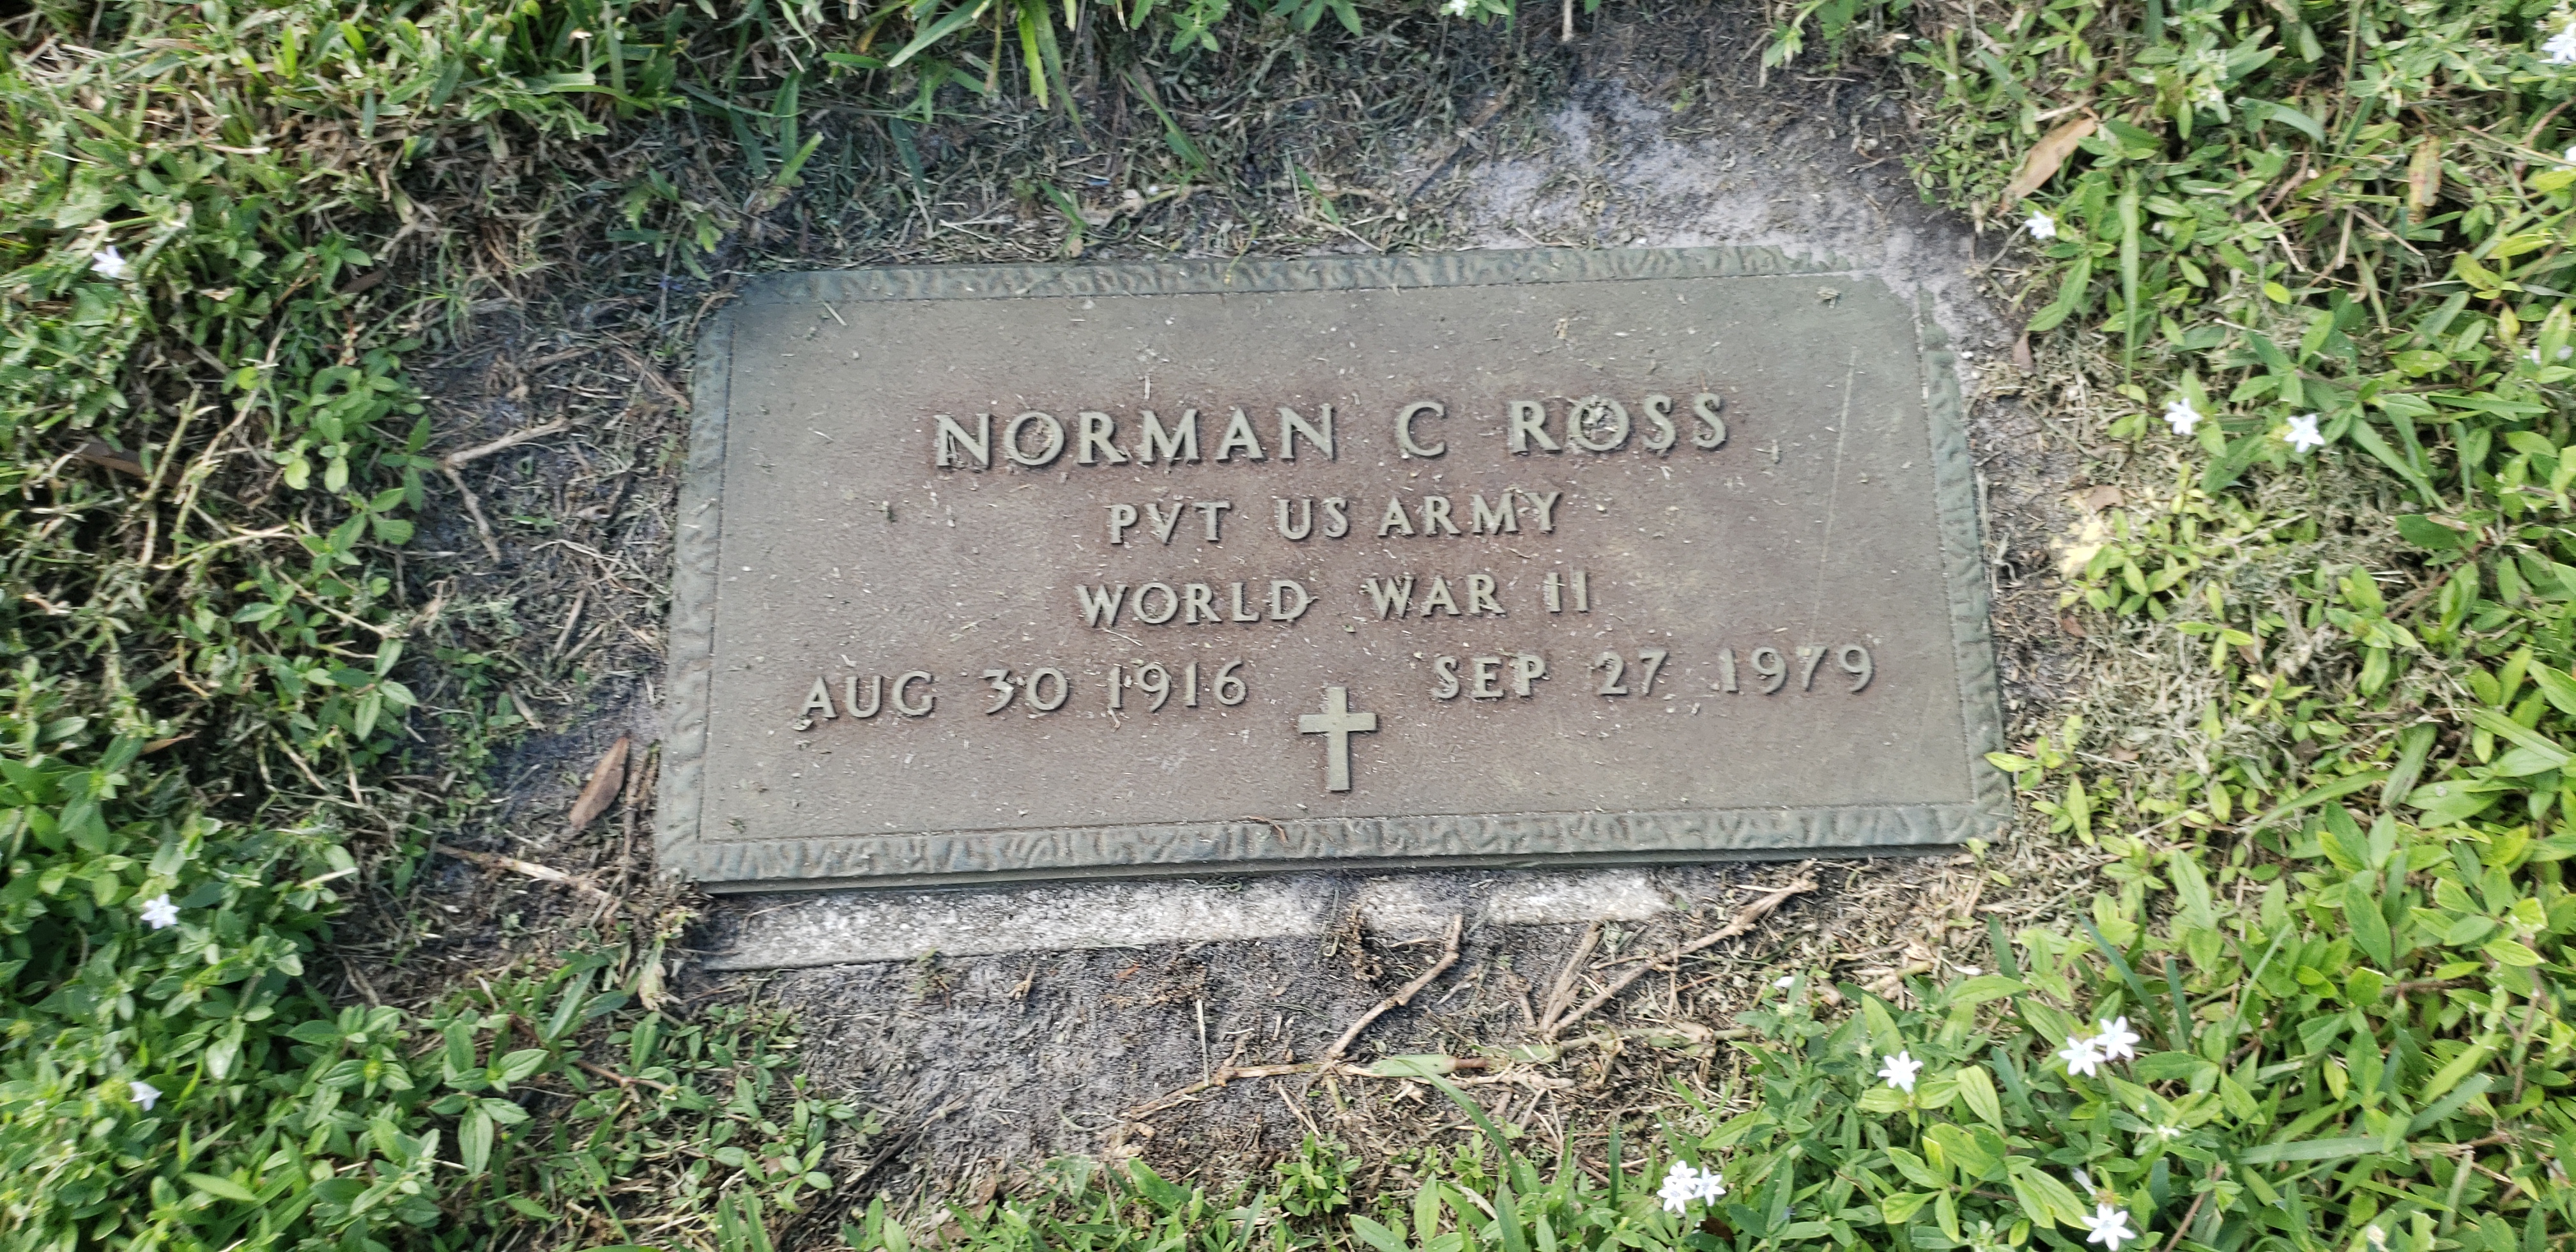 Norman C Ross